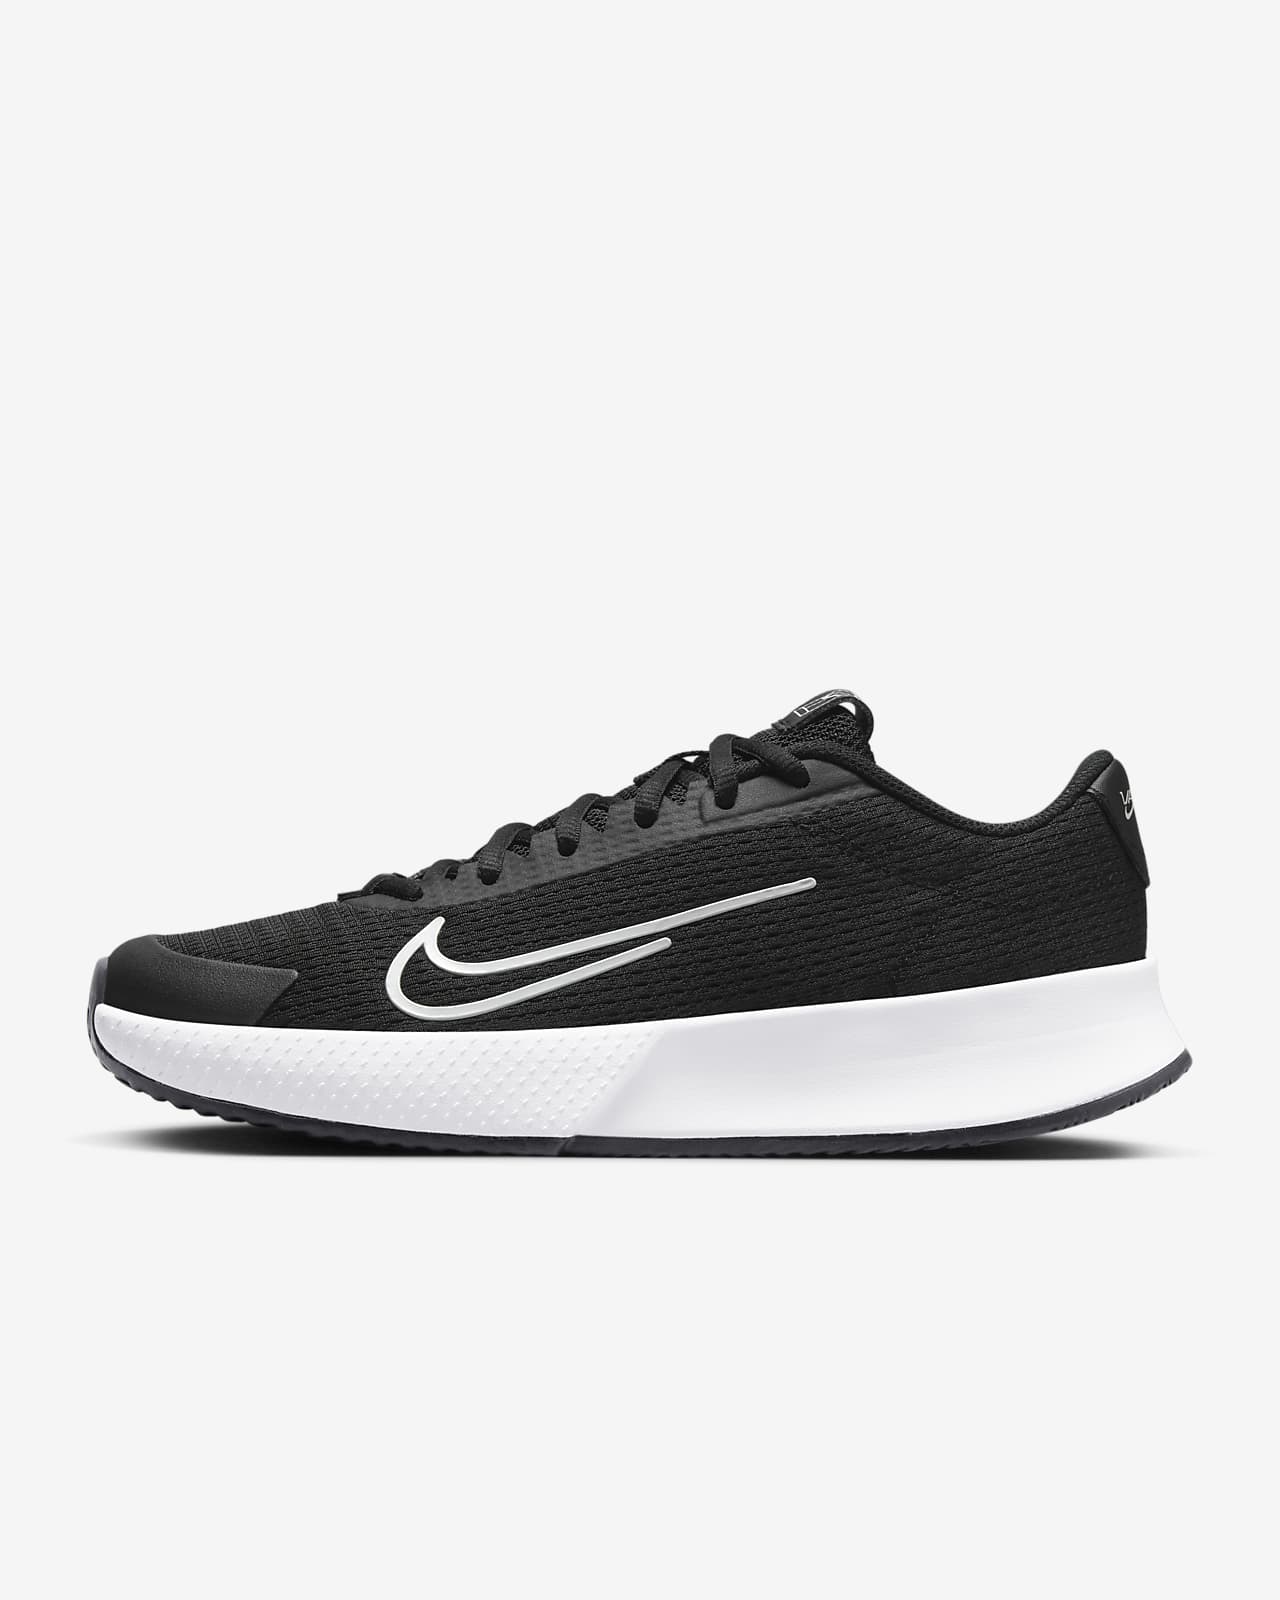 NikeCourt Vapor Lite 2 Toprak Kort Kadın Tenis Ayakkabısı